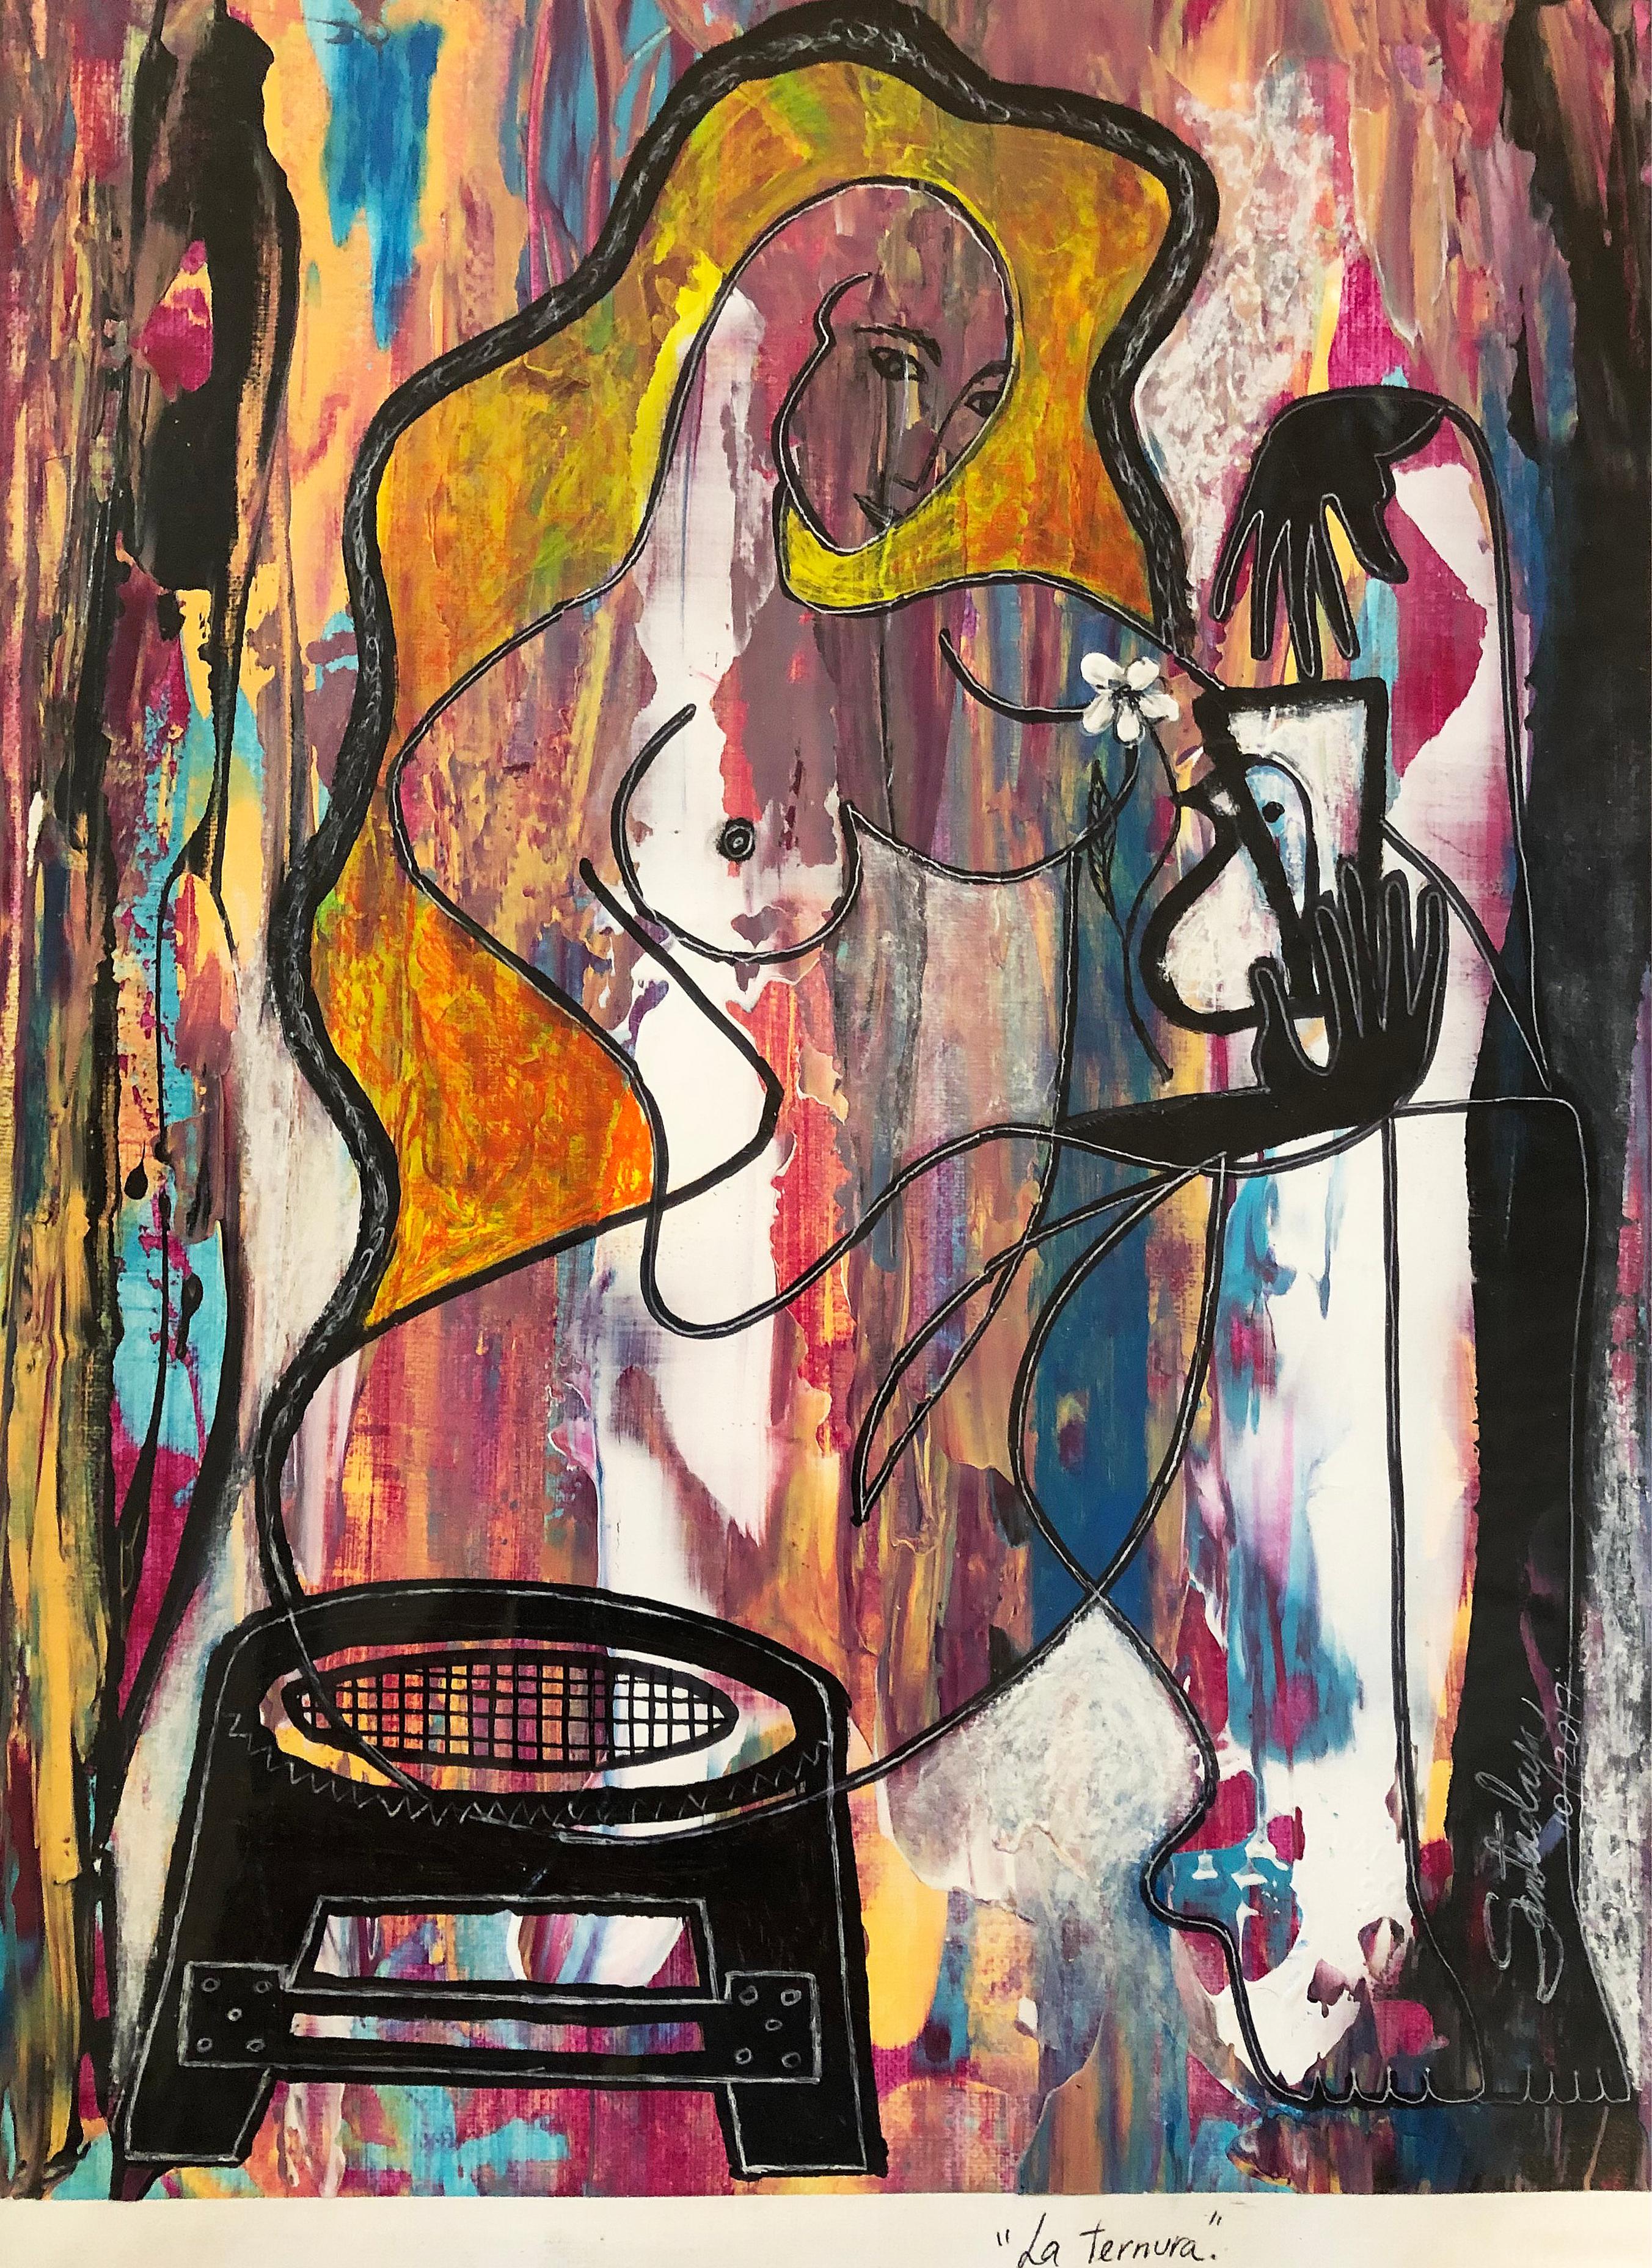 Hiremio Garcia Santaolaya abstrakte Malerei, kubanisch-amerikanischer Künstler

Zum Verkauf angeboten wird ein Original-Acryl auf Papier Gemälde von der kubanisch-amerikanischen Künstler Hiremio Garcia Santaolaya mit dem Titel 